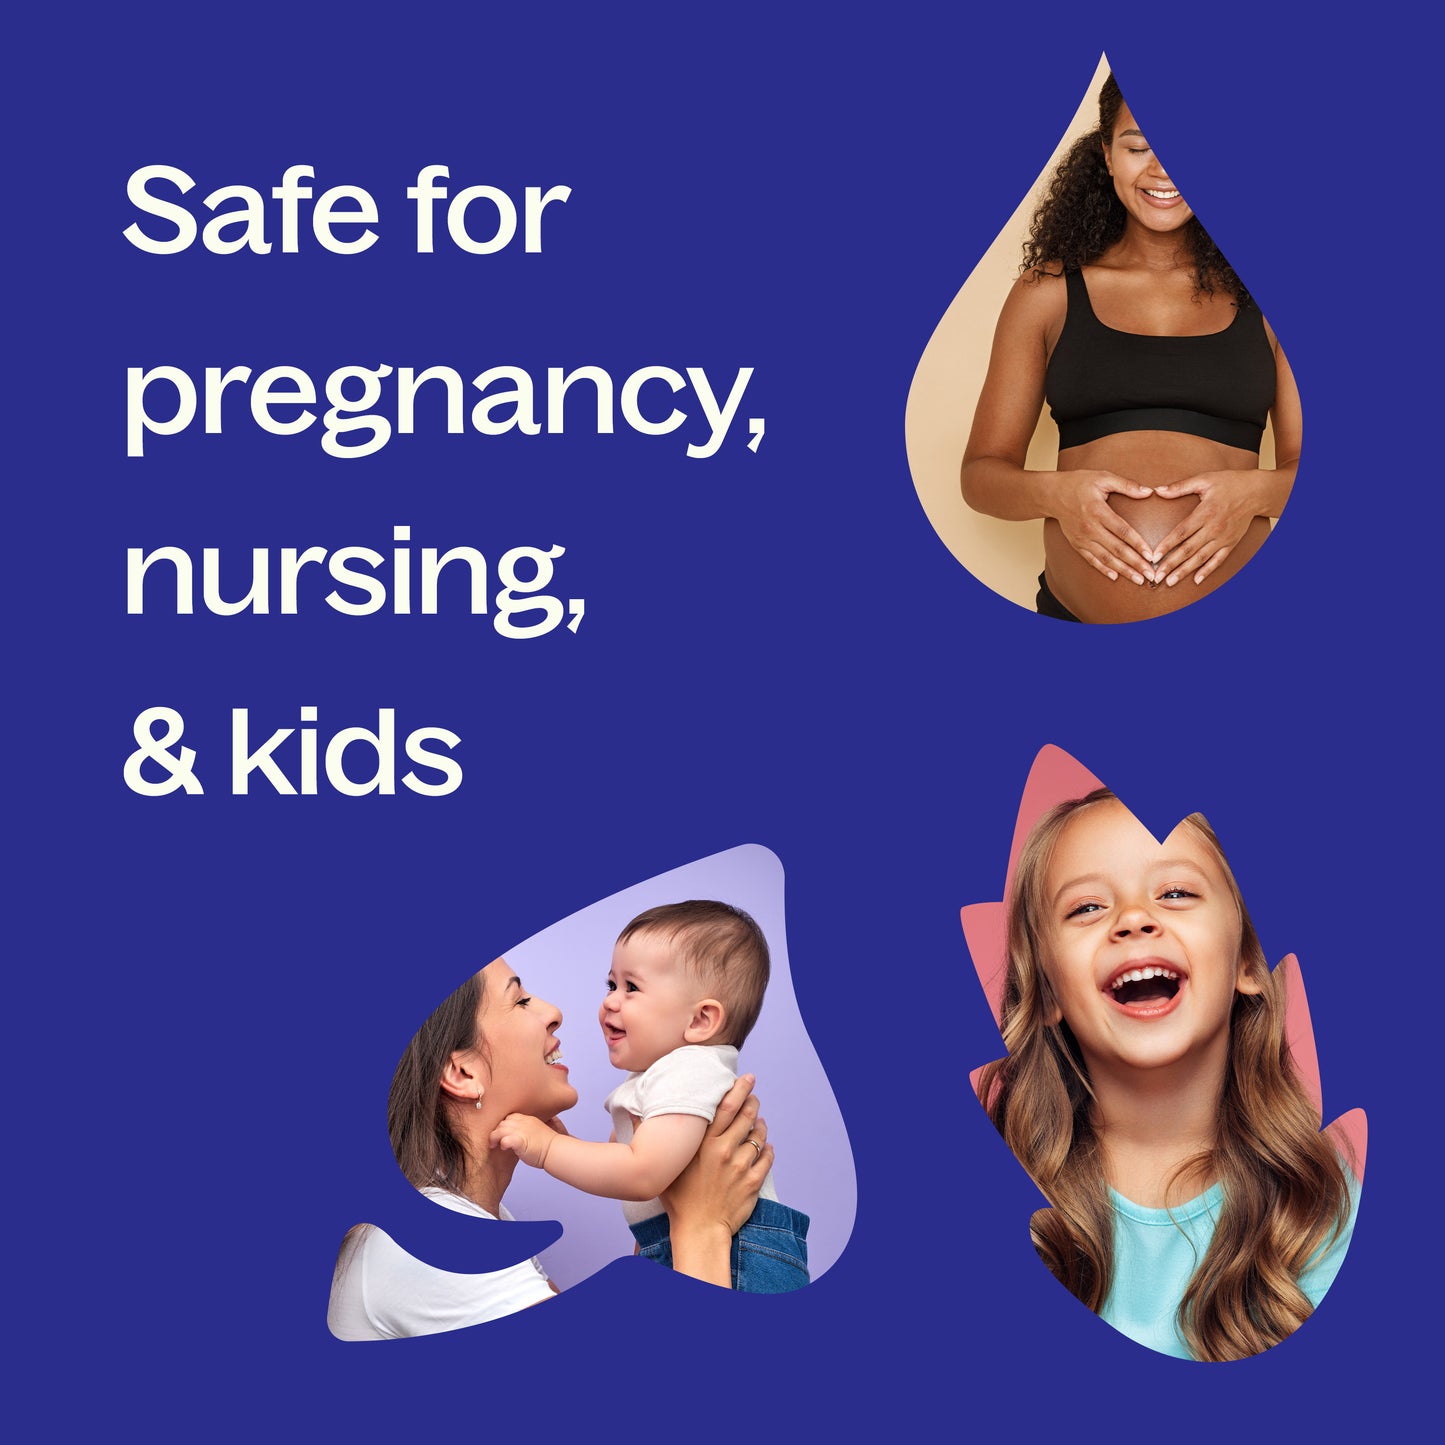 safe for pregnancy, nursing, & kids